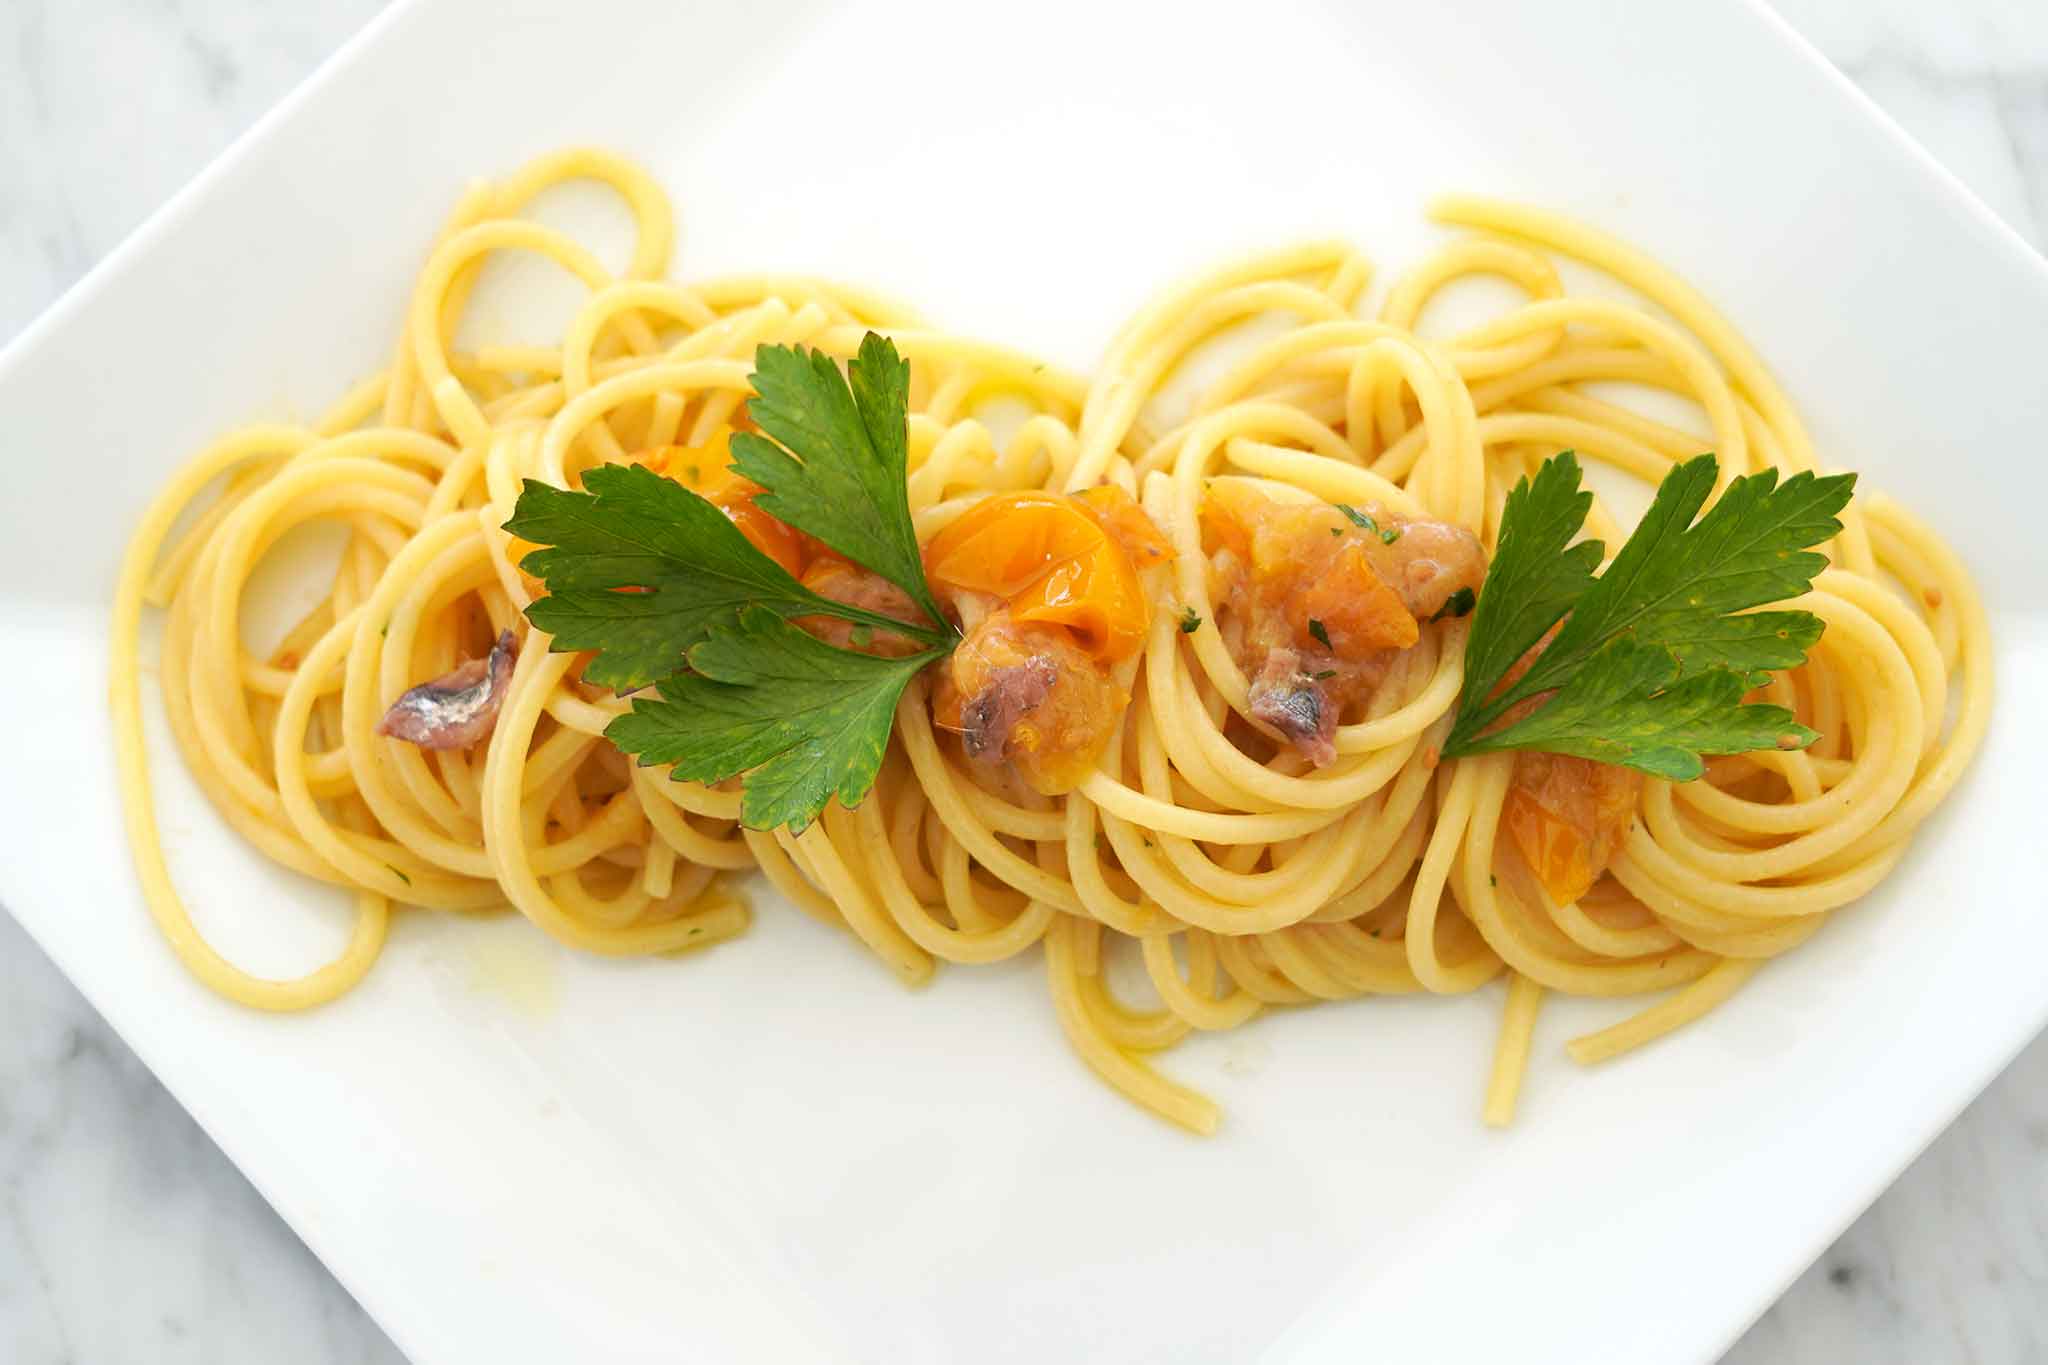 spaghetti pomodorini gialli alici menaica